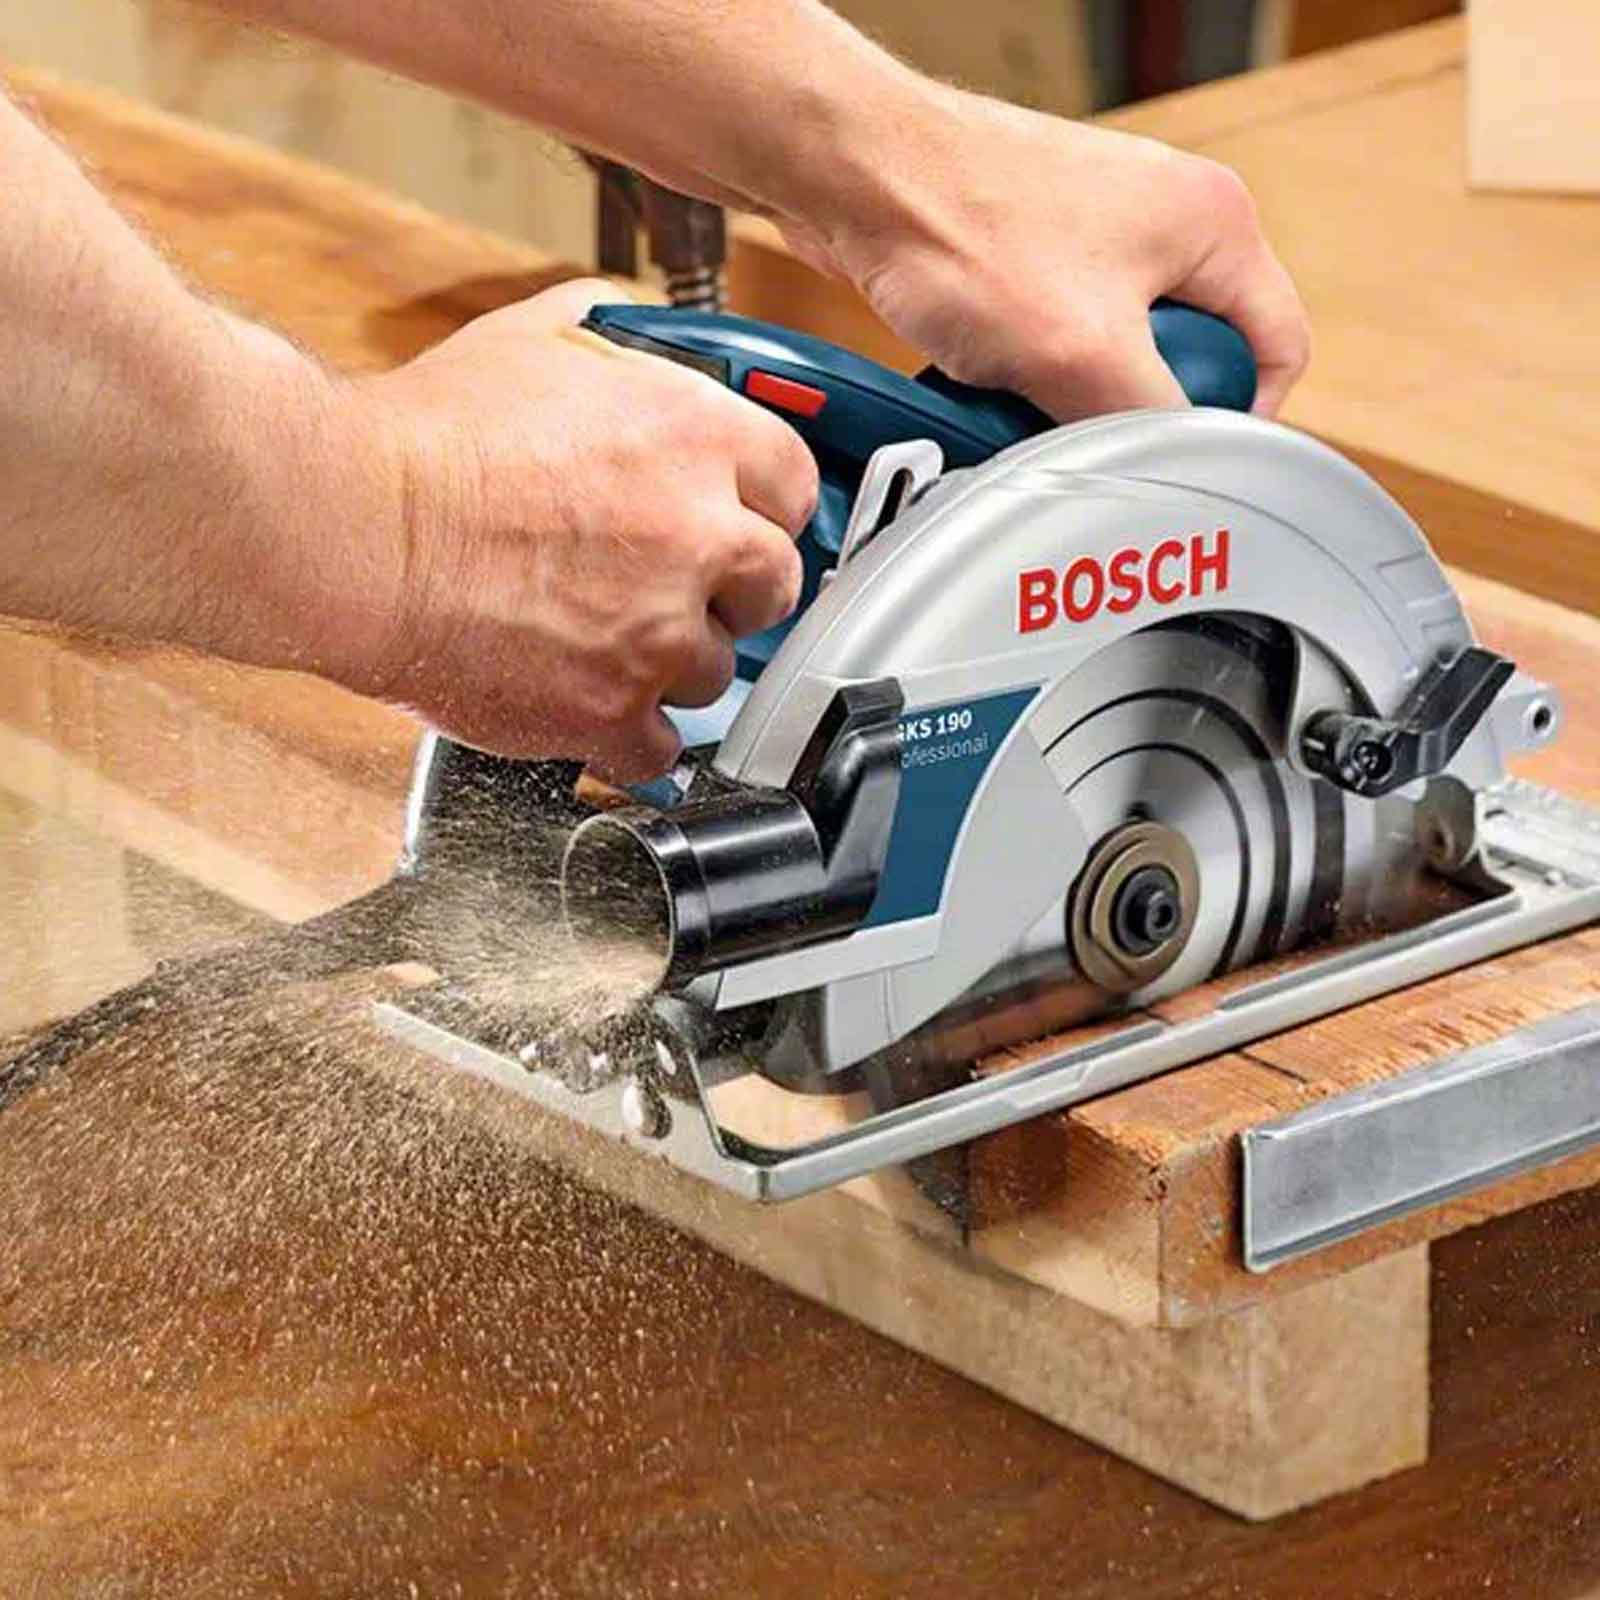 Обзор пил по дереву. Bosch GKS 190. Bosch 190 GKS циркулярка. Bosch GKS 190 circular saw. Пила Bosch GKS 190 0601623000.